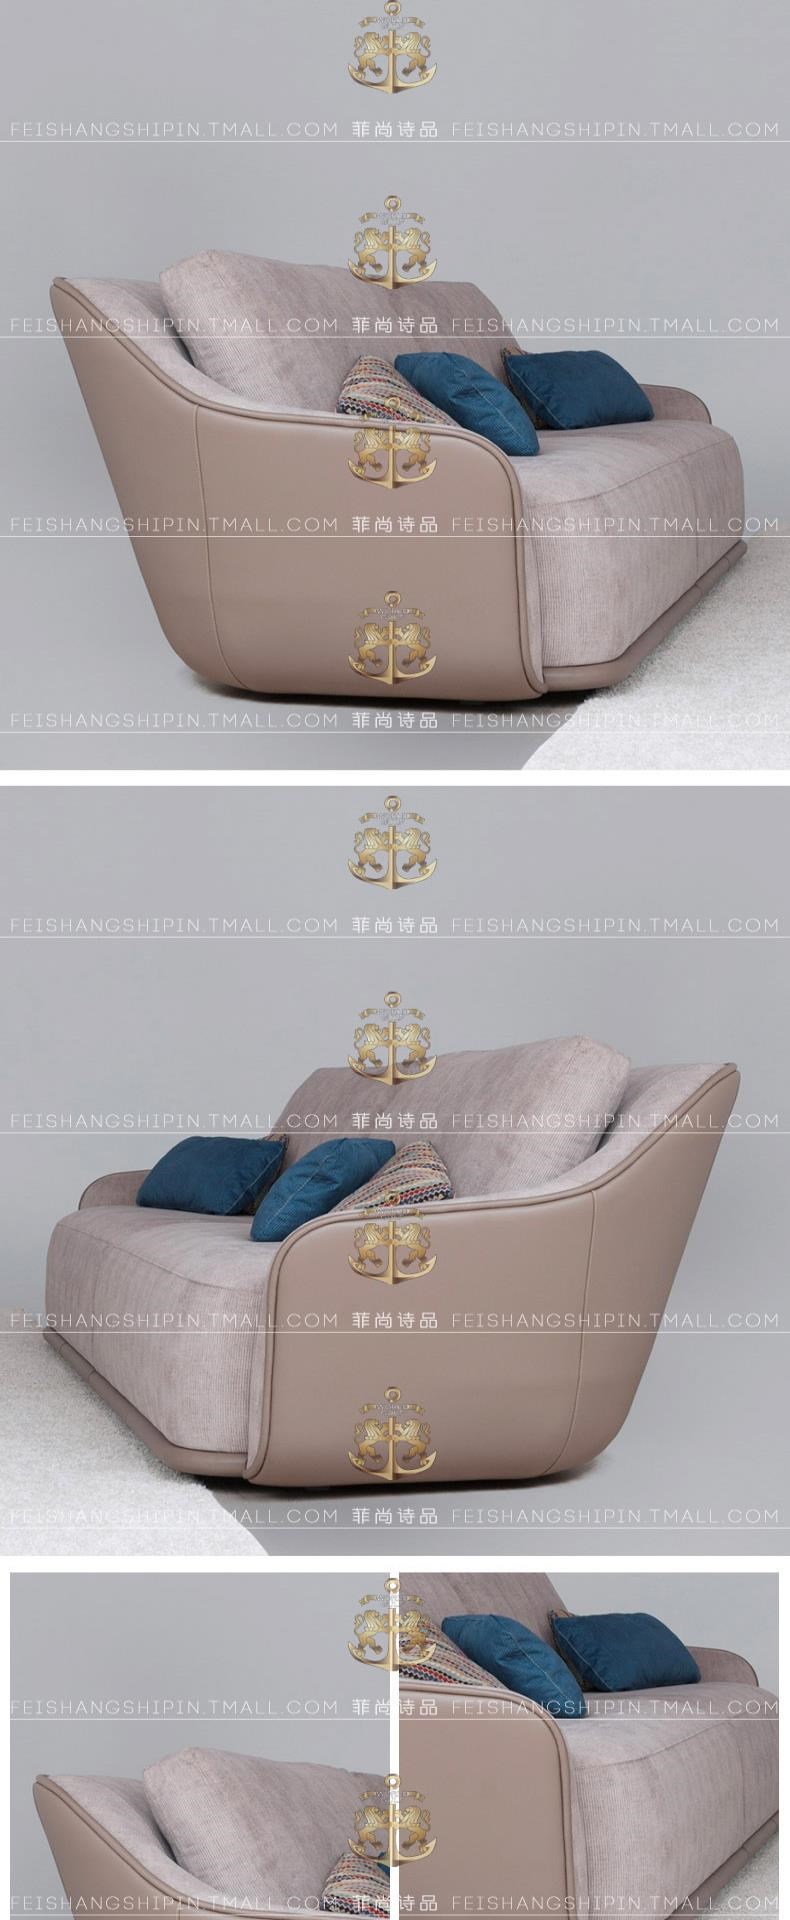 Ghế sofa ba chỗ nhẹ sang trọng kiểu Hồng Kông, ghế sofa thư giãn sau hiện đại, ghế sofa phòng khách tối giản kiểu Ý, ghế sofa - Ghế sô pha